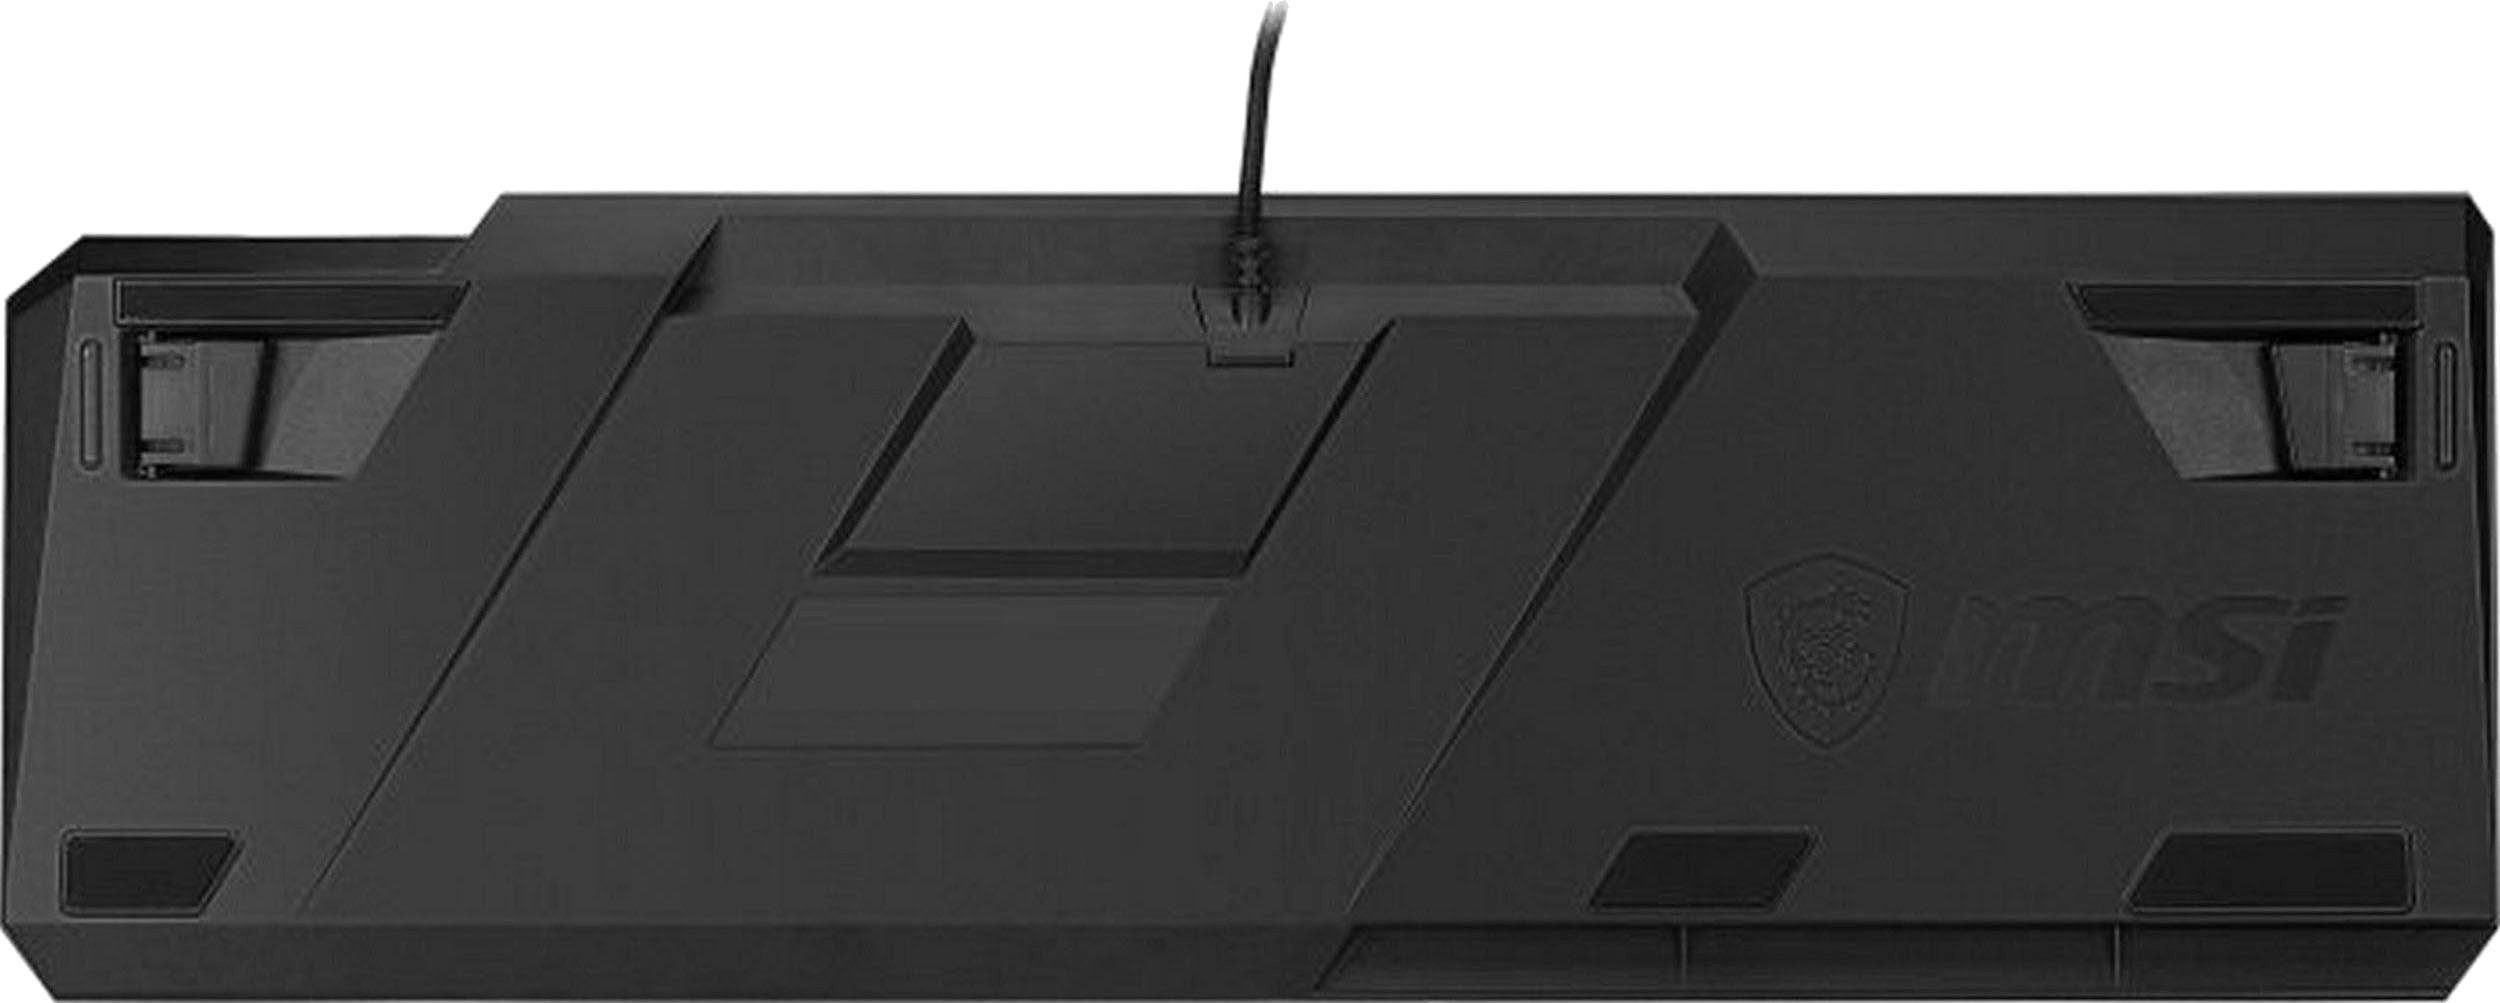 MSI VIGOR LOW GK50 Gaming-Tastatur PROFILE